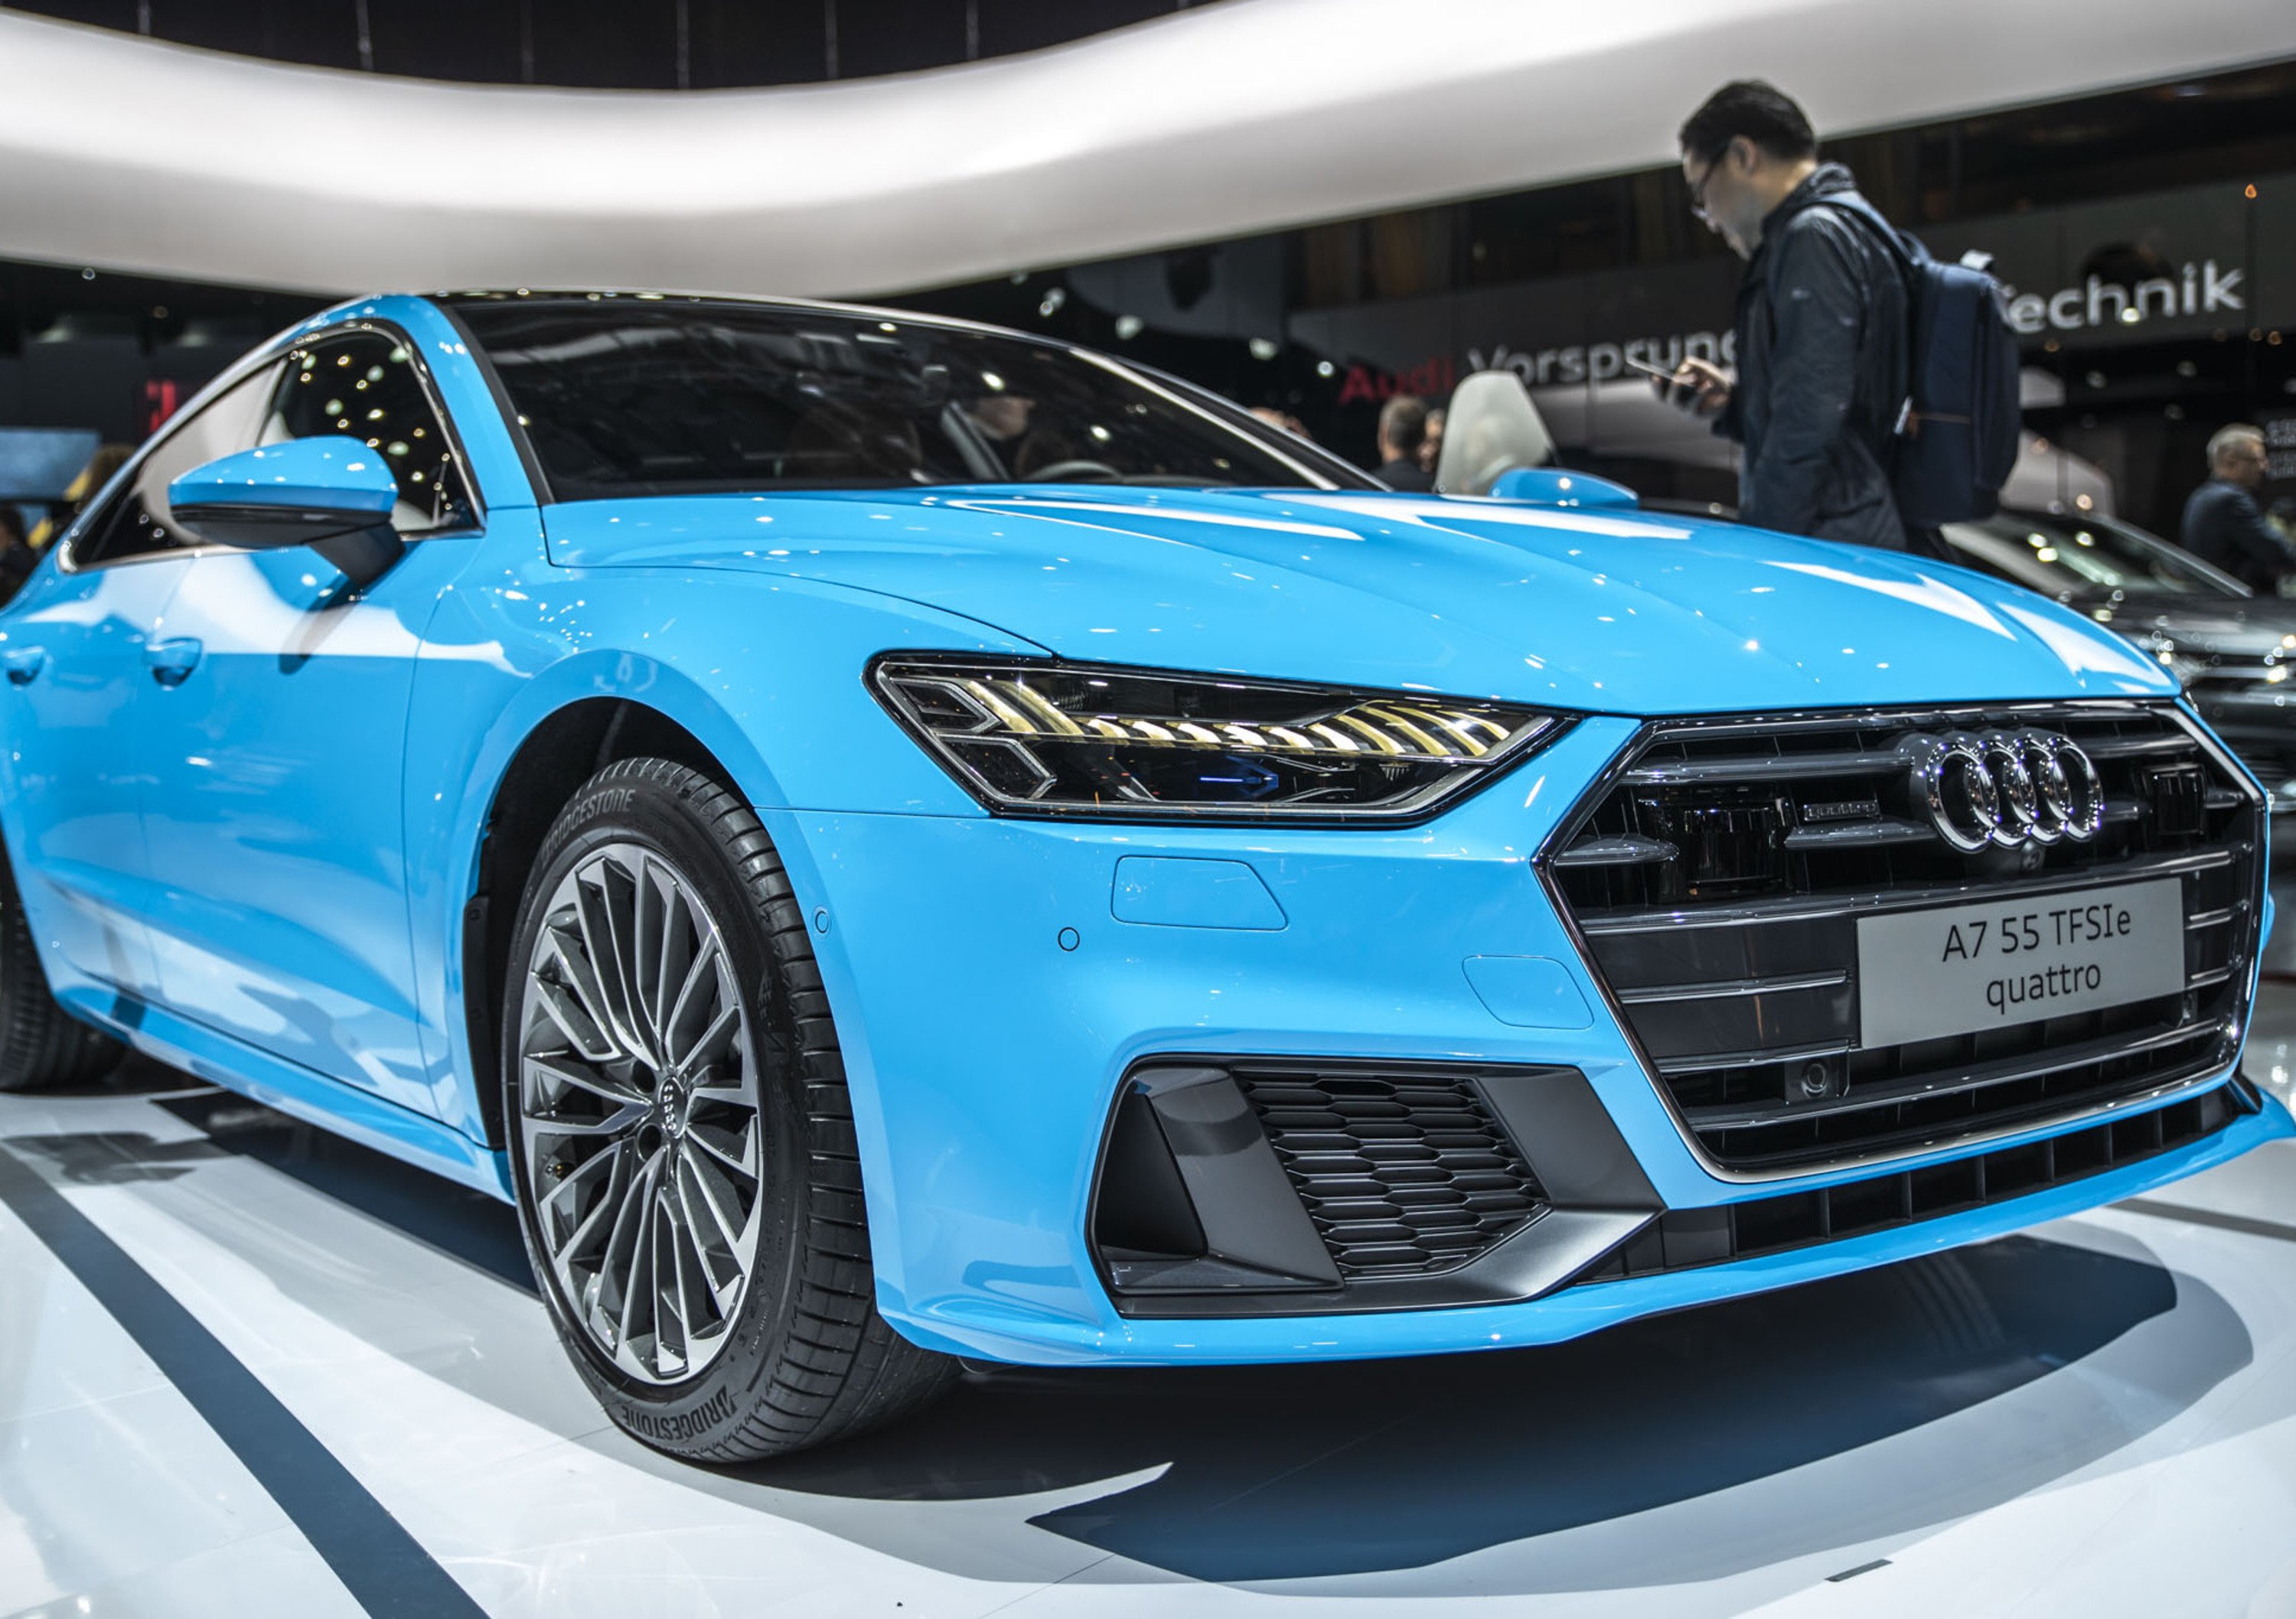 Salone di Ginevra 2019, Longo, Audi: &laquo;Oggi il plug-in hybrid &egrave; pi&ugrave; importante dell&rsquo;elettrico puro&raquo;